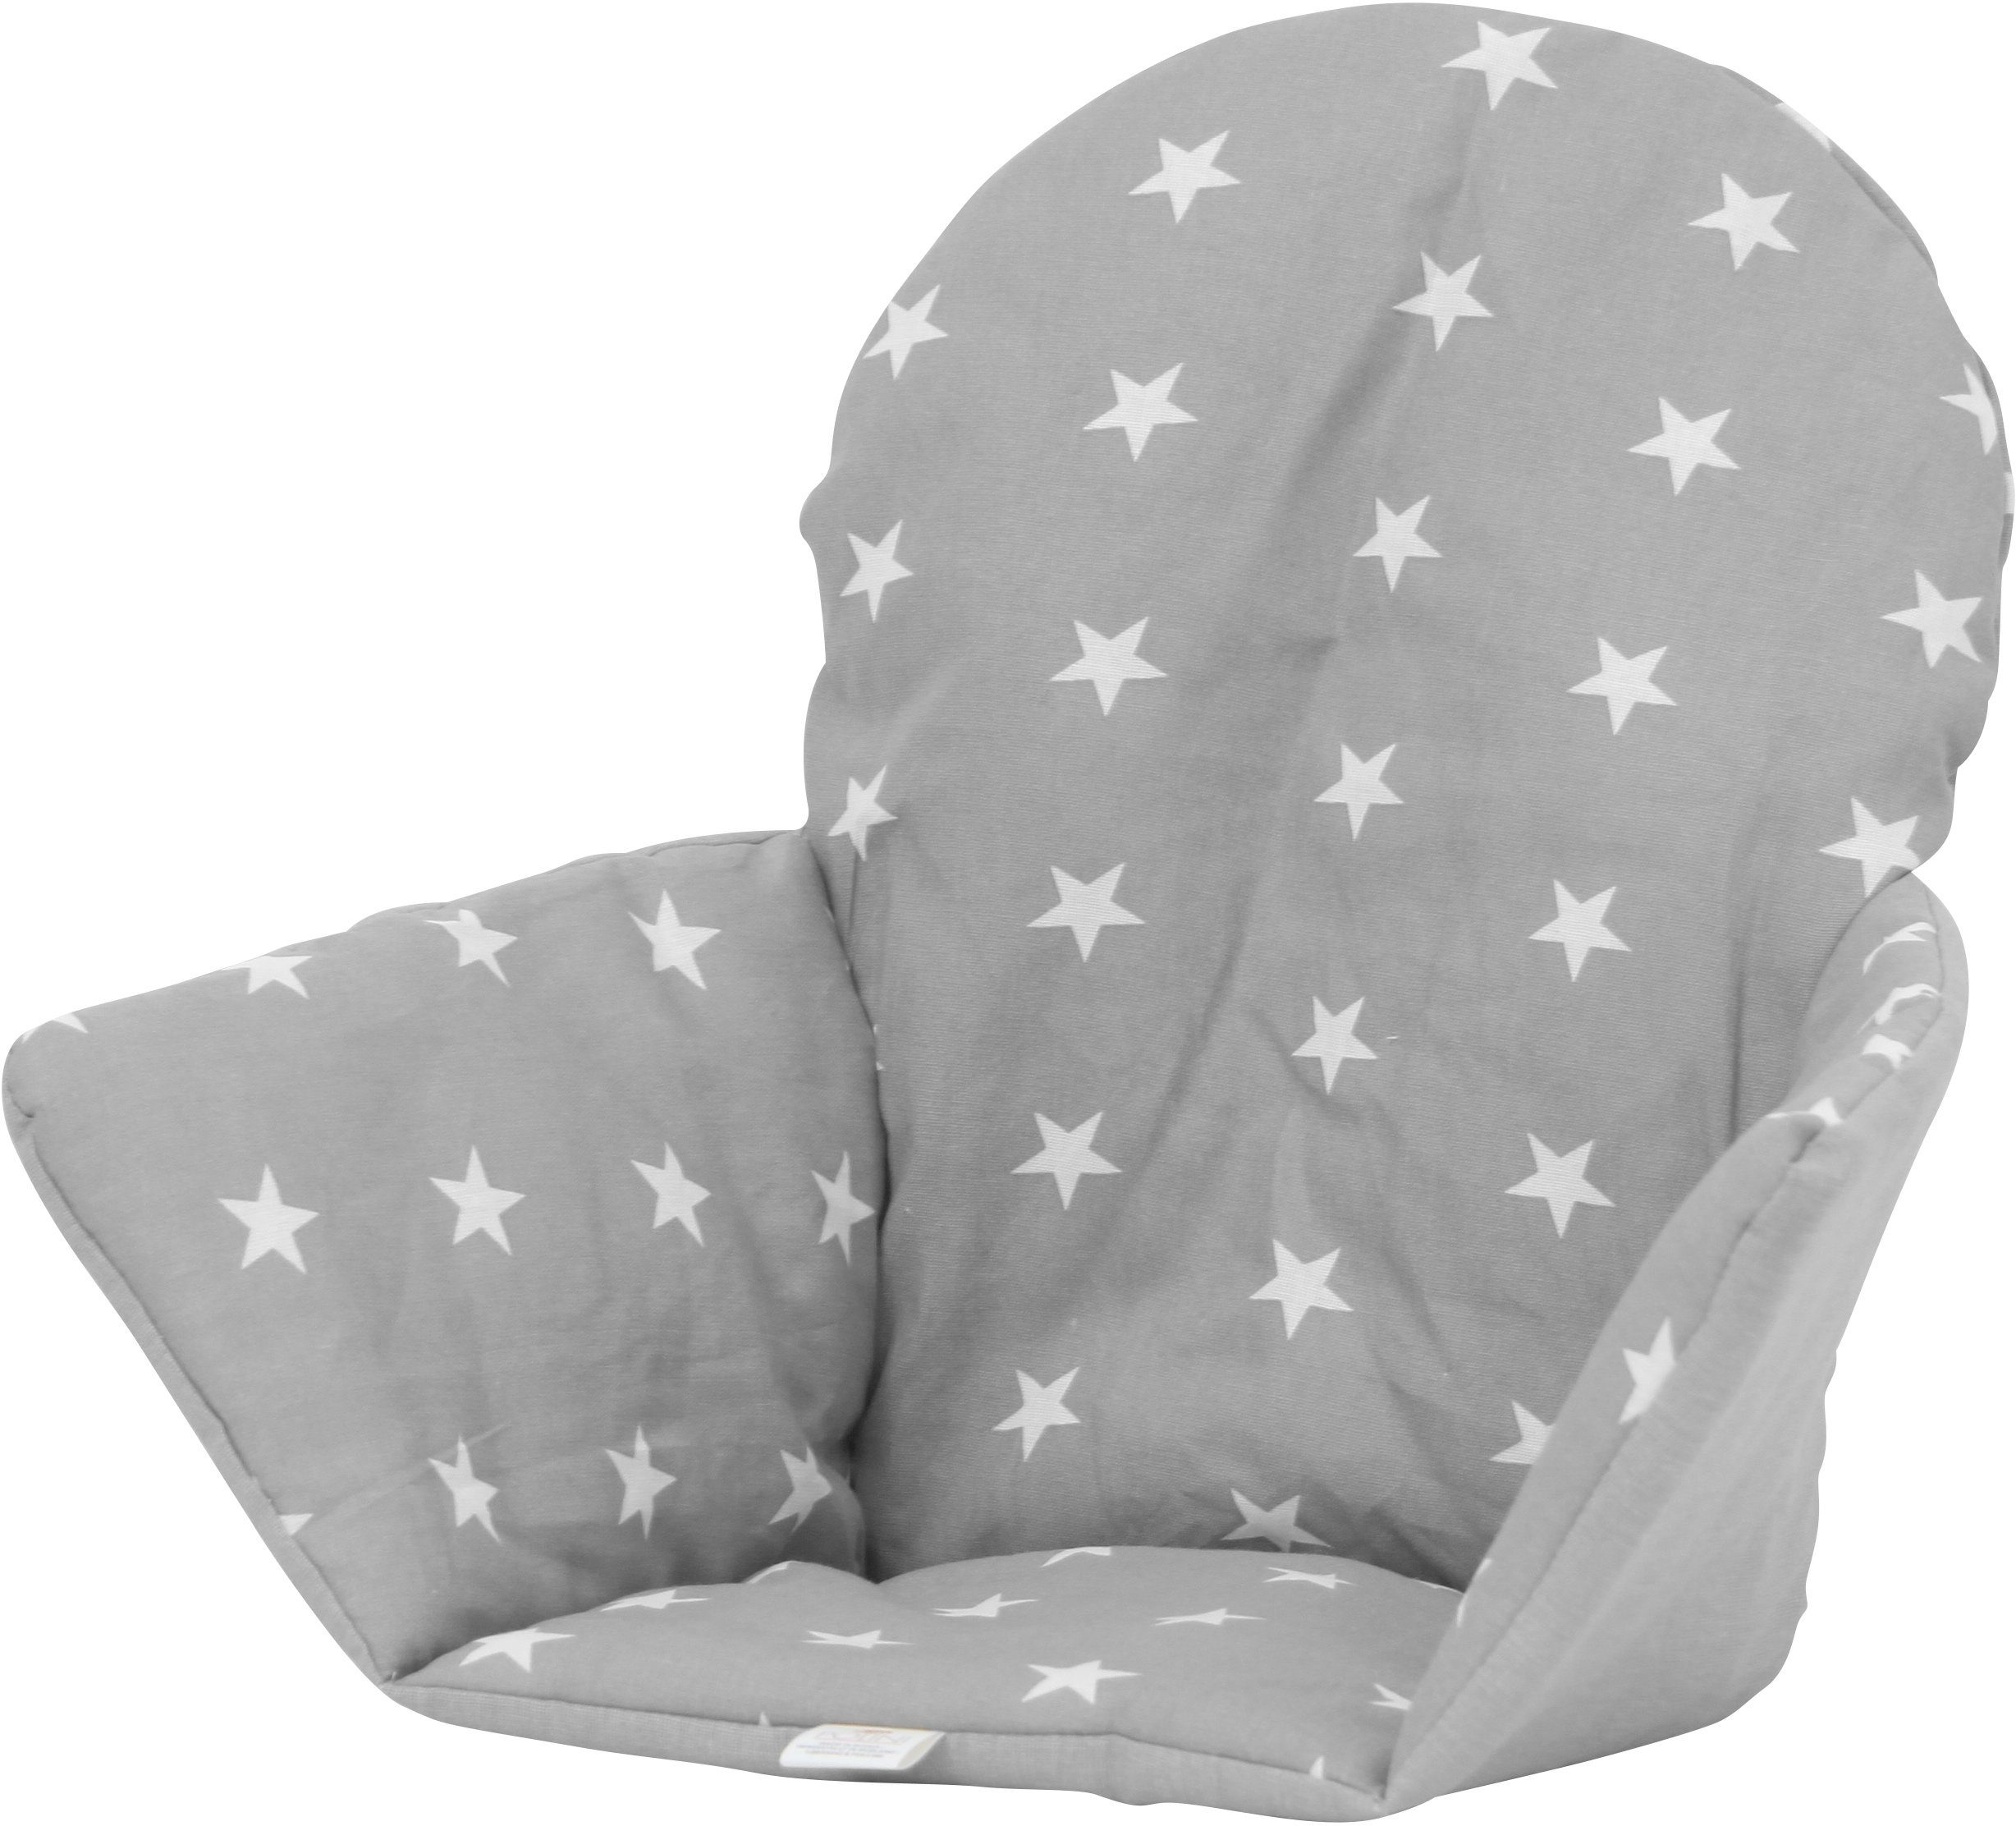 Polini kids Kinder-Sitzauflage »Sterne grau«, für Ikea Antilop-Hochstuhl  (nicht im Lieferumfang enthalten) online kaufen | OTTO